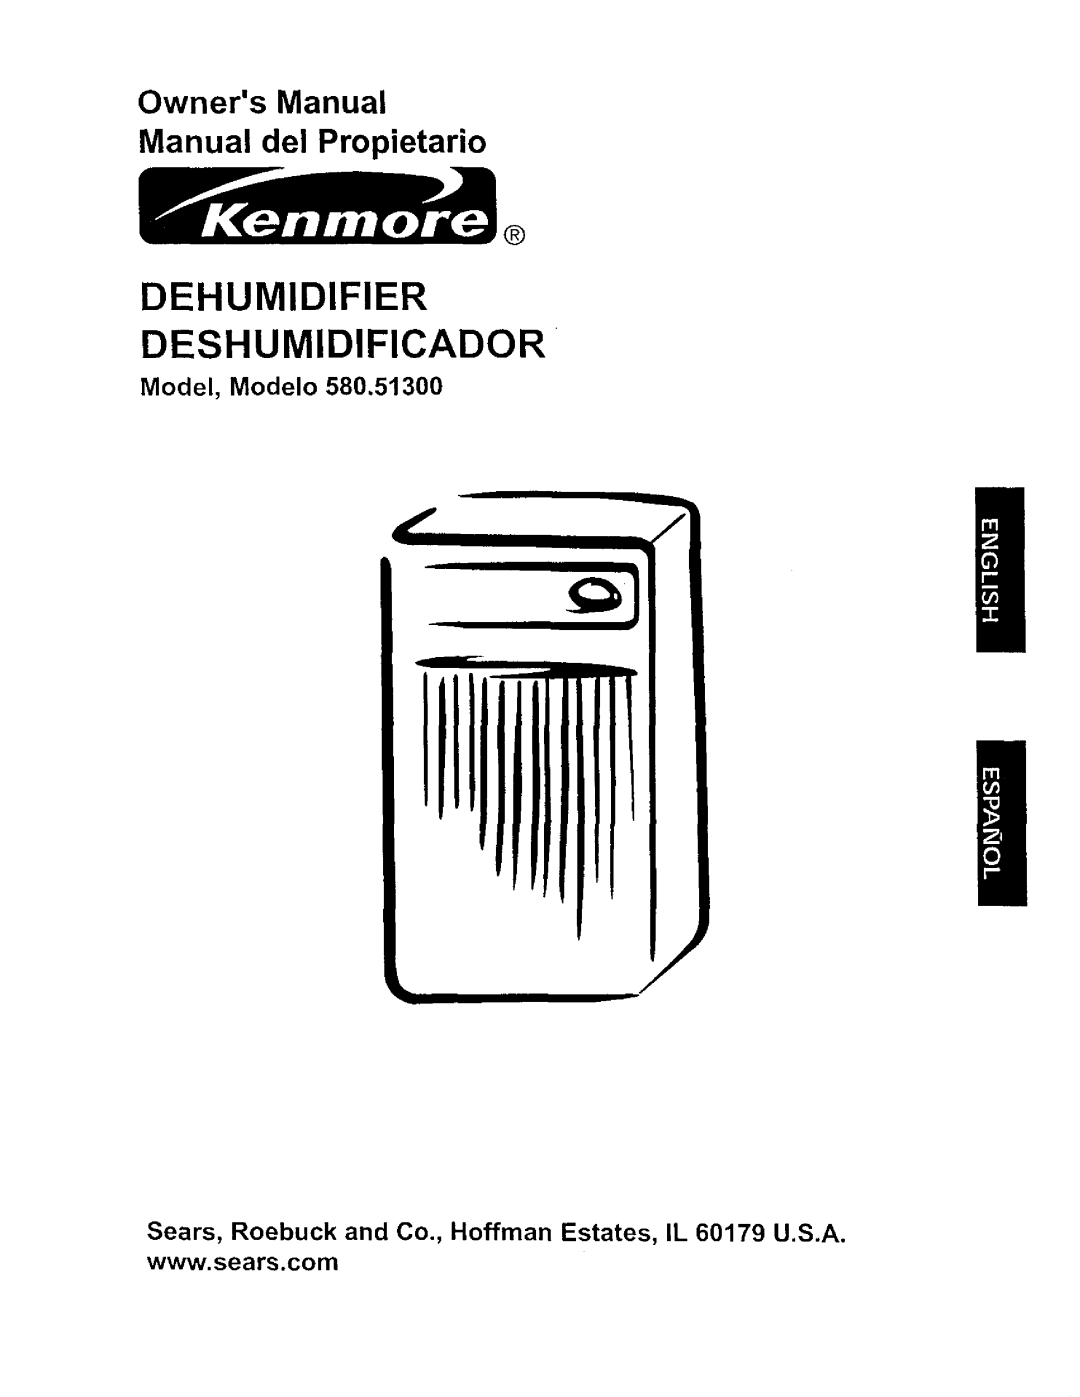 Kenmore 580.513 owner manual Model, Modelo, Deshumidificador, Dehumidifier 